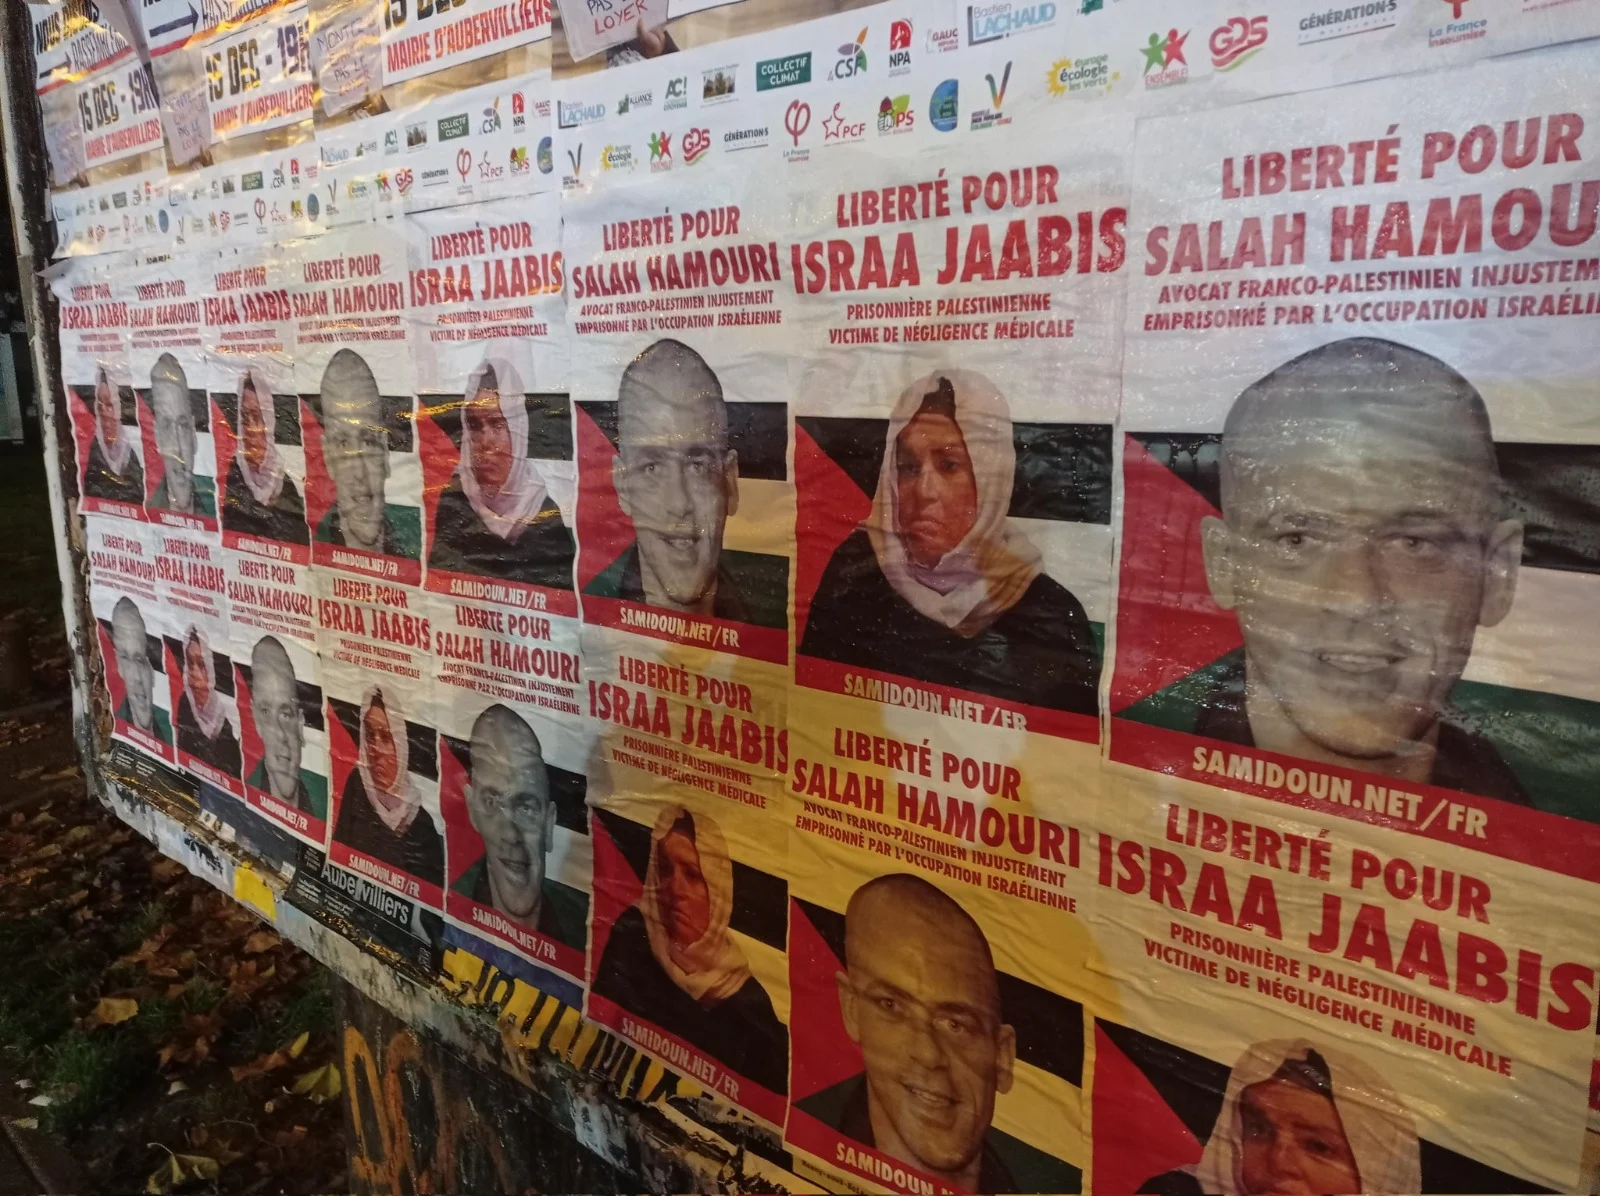 שלט בעיר אוברווילייה שבצרפת הקורא לשחרורו של חמורי ושל אסראא' ג'אבאס